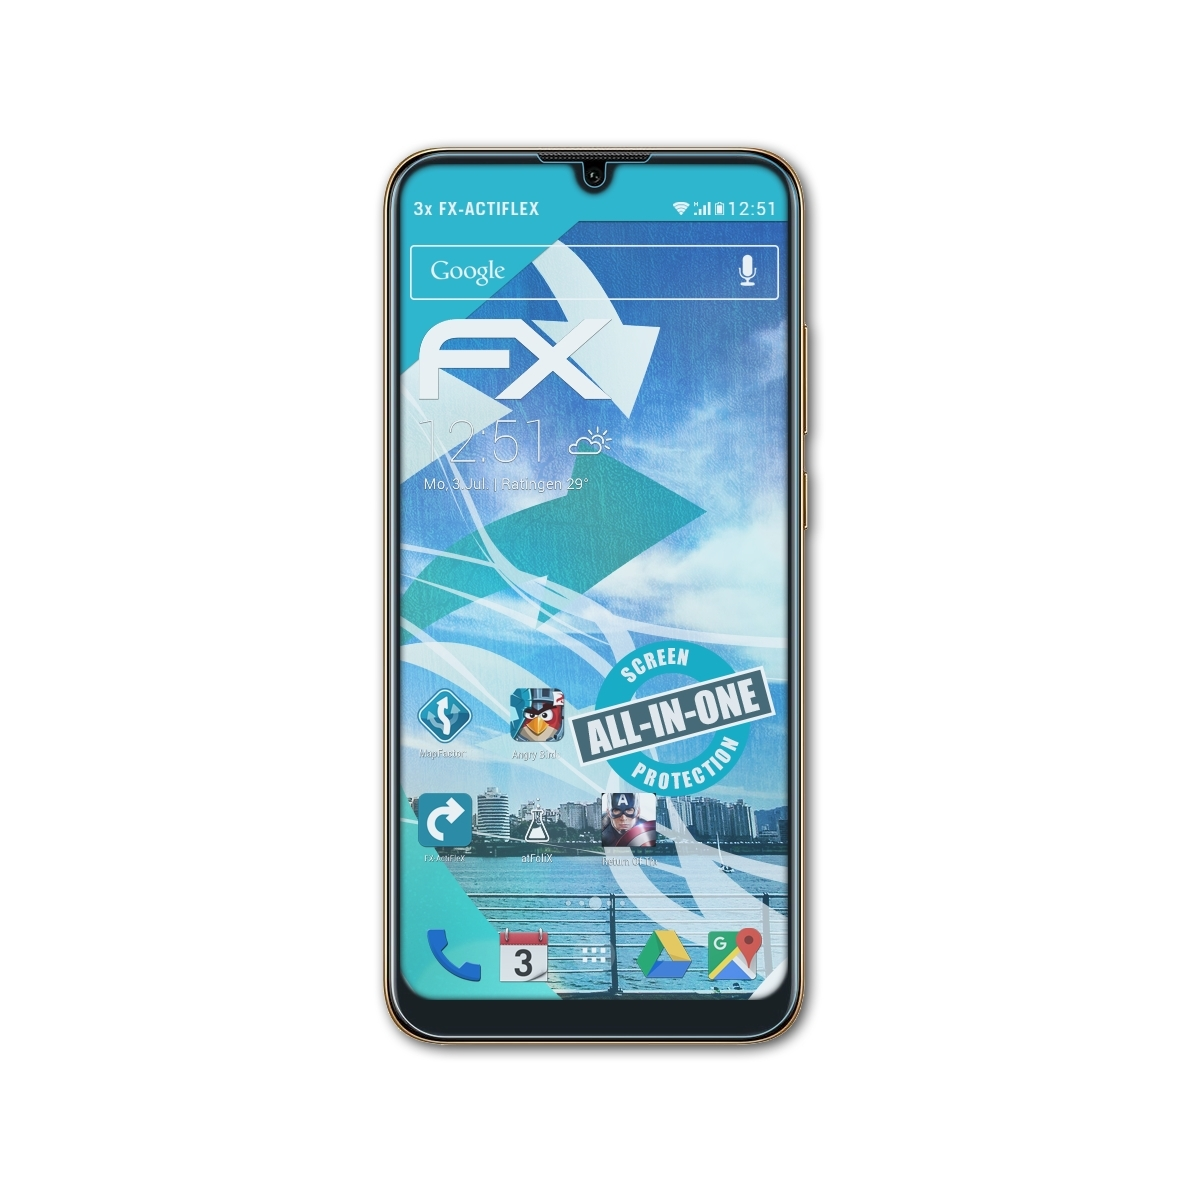 Y6 FX-ActiFleX 2019) Huawei Pro 3x Displayschutz(für ATFOLIX